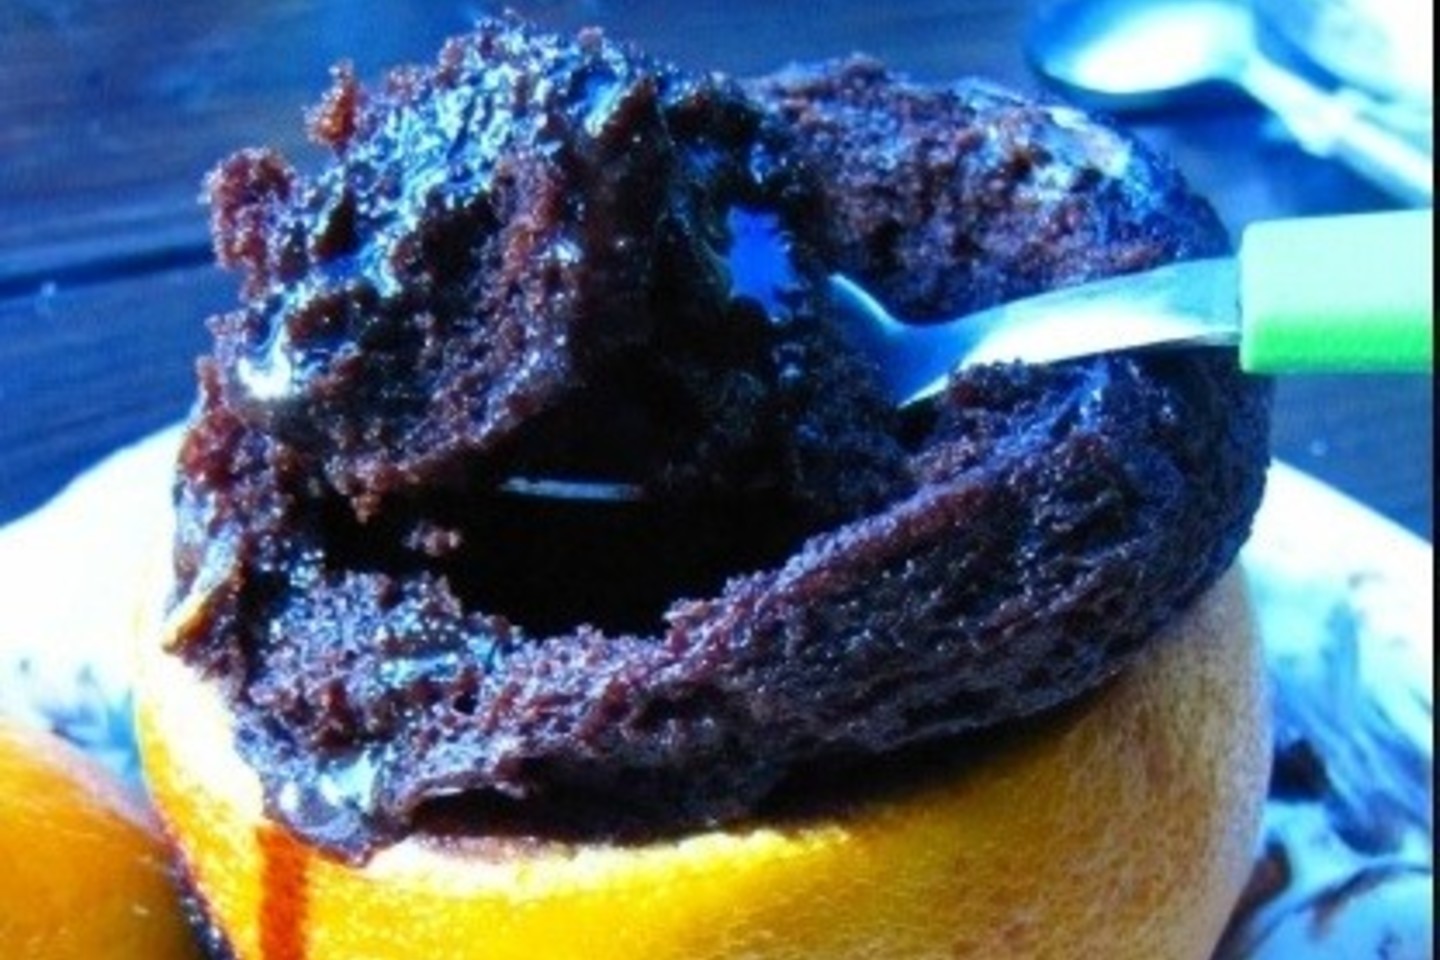 Apelsinų žievelėse keptas šokoladinis pyragas.<br>Nuotr. iš ritosreceptai.lt